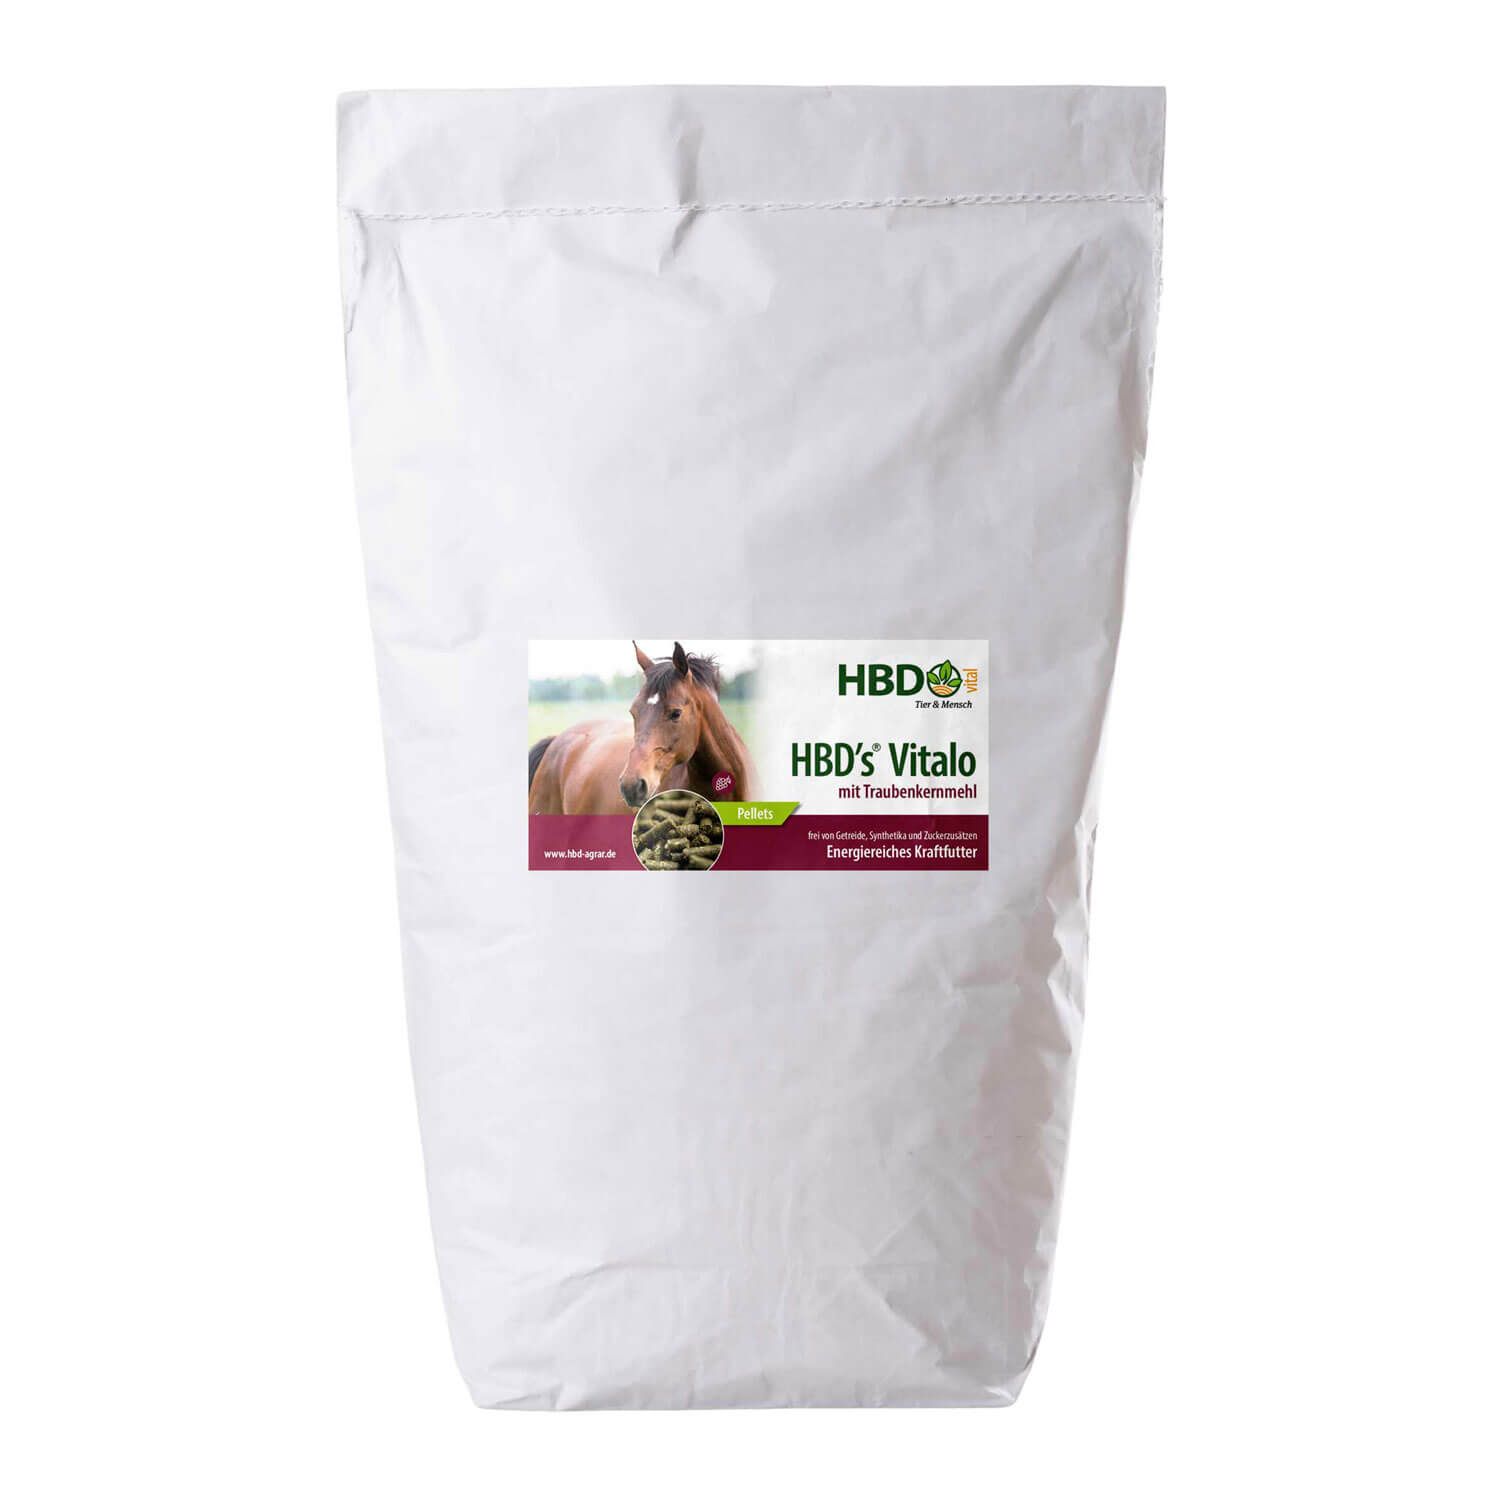 HBD-Agrar - HBD's® Vitalo - TKM (Mit Traubenkernmehl) - Ausgewogenes Kraftfutter für Pferde